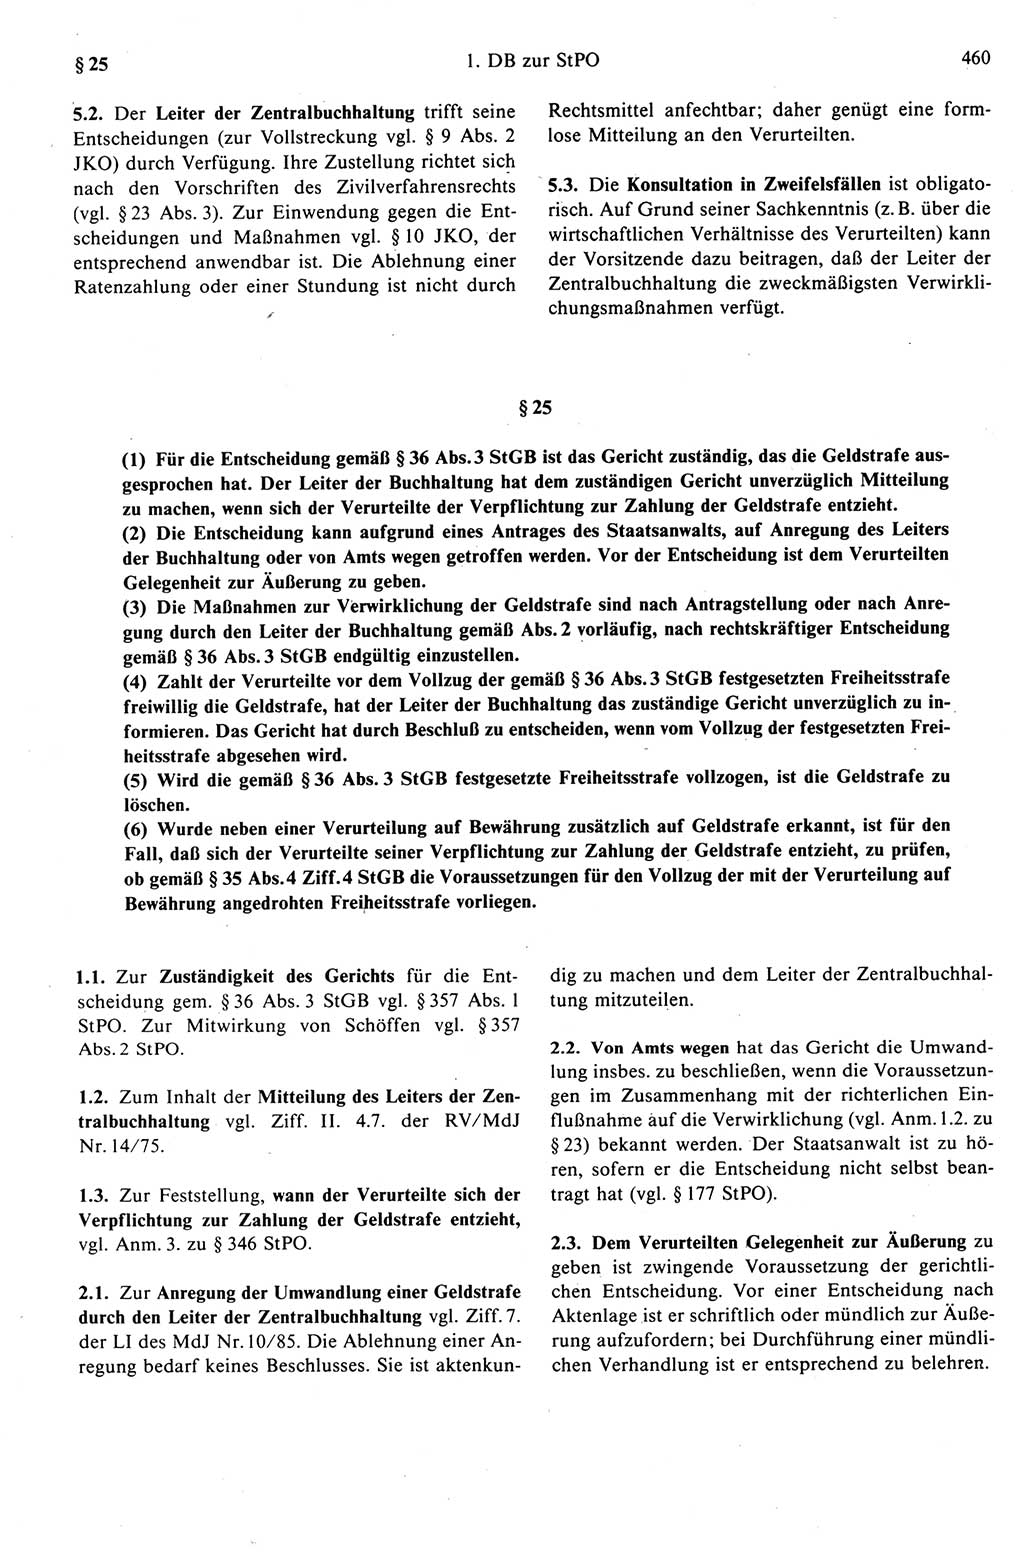 Strafprozeßrecht der DDR (Deutsche Demokratische Republik), Kommentar zur Strafprozeßordnung (StPO) 1989, Seite 460 (Strafprozeßr. DDR Komm. StPO 1989, S. 460)